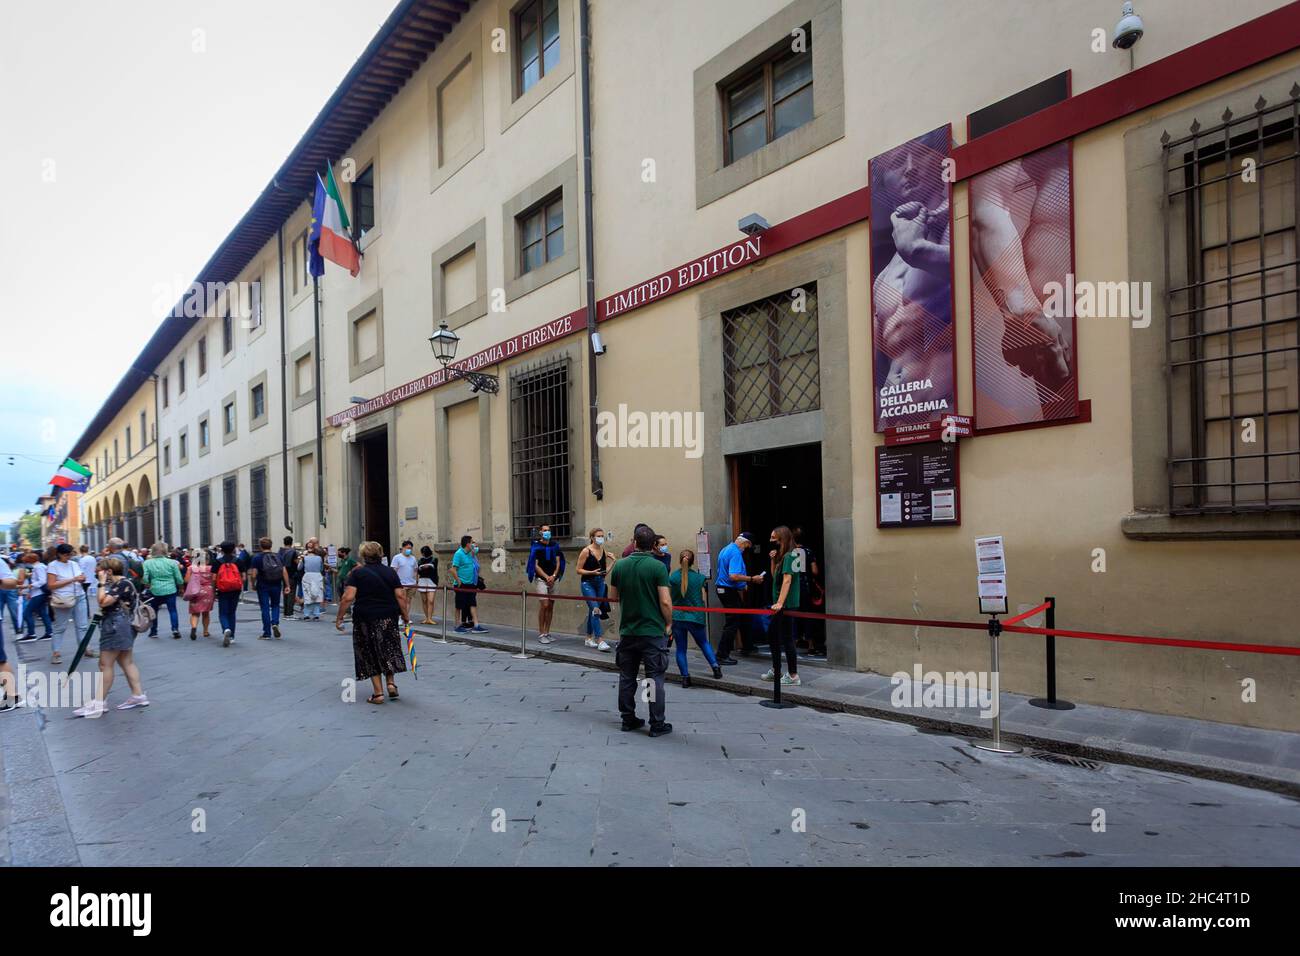 Galeria de la Academia. Florencia. Stock Photo